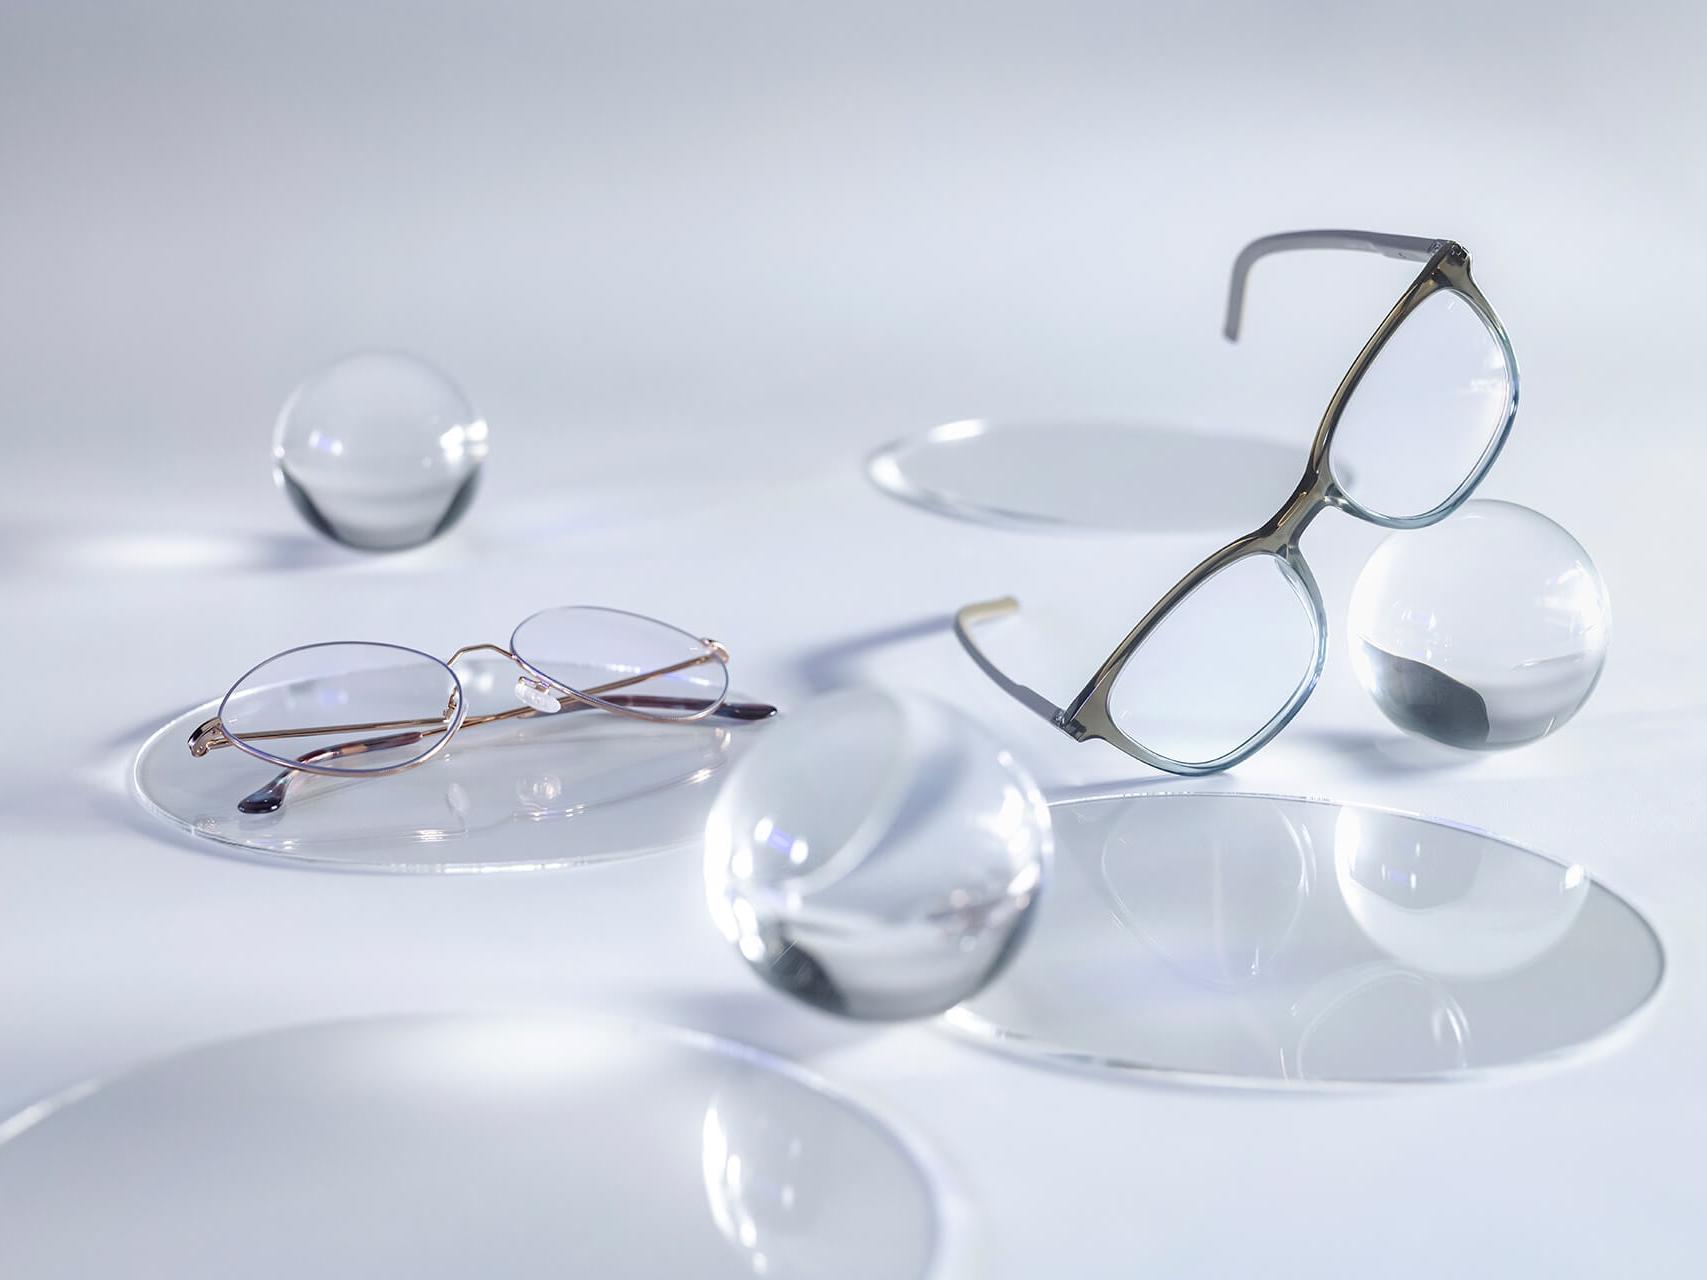 Brillenglazen met ZEISS brillenglazen die voorzien zijn van de DuraVision® Silver coating en geen reflecties vertonen in vergelijking met de omliggende glazen bollen.